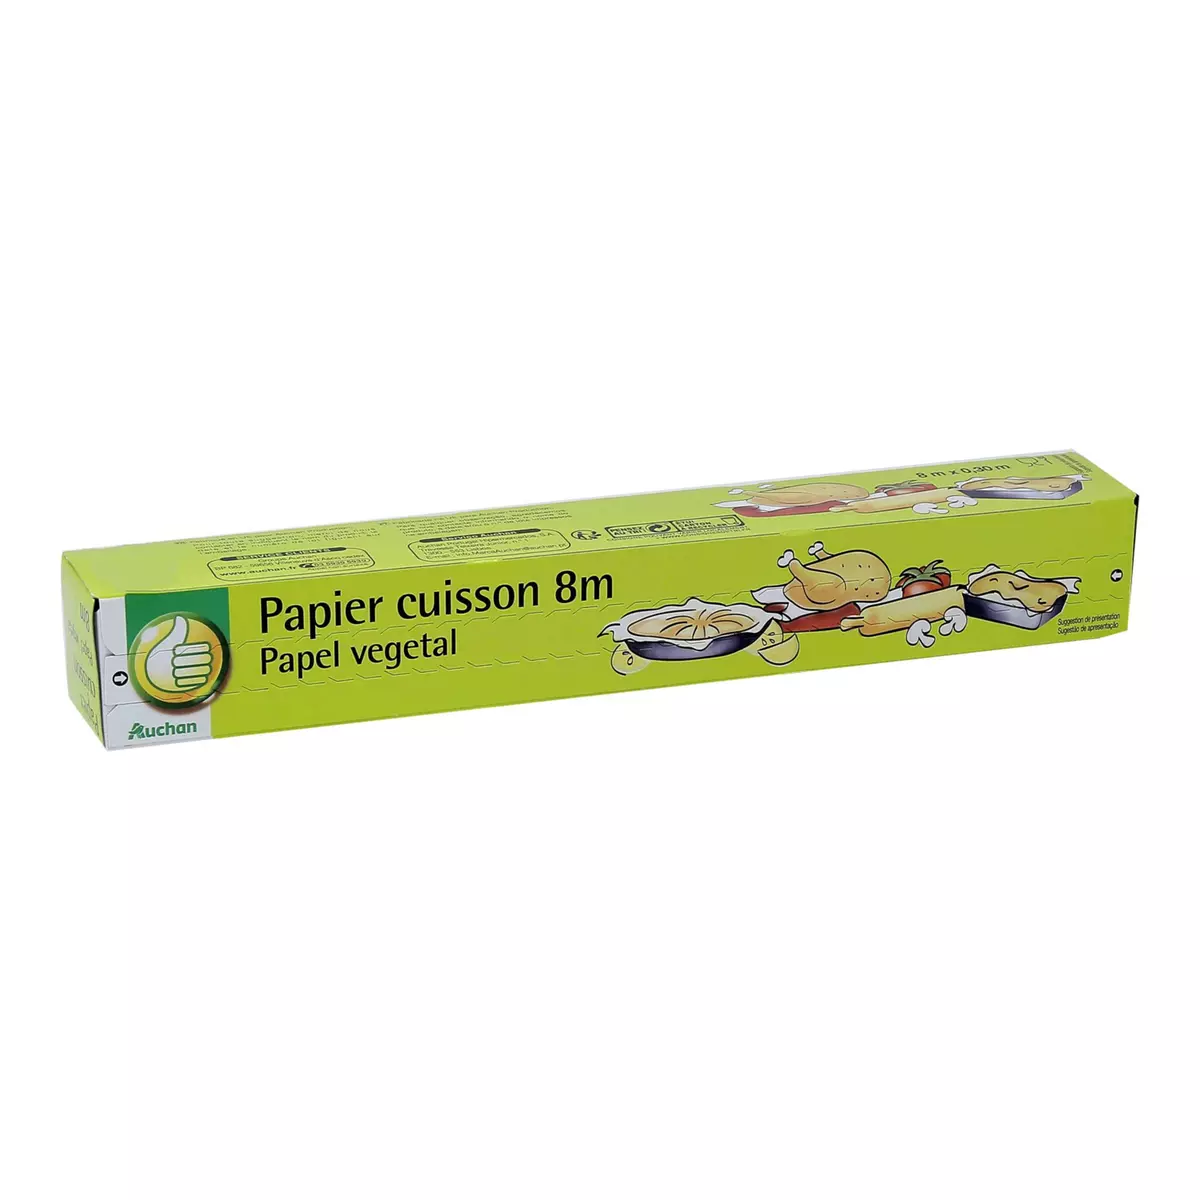 POUCE Papier cuisson en papier végétal 8m 1 rouleau